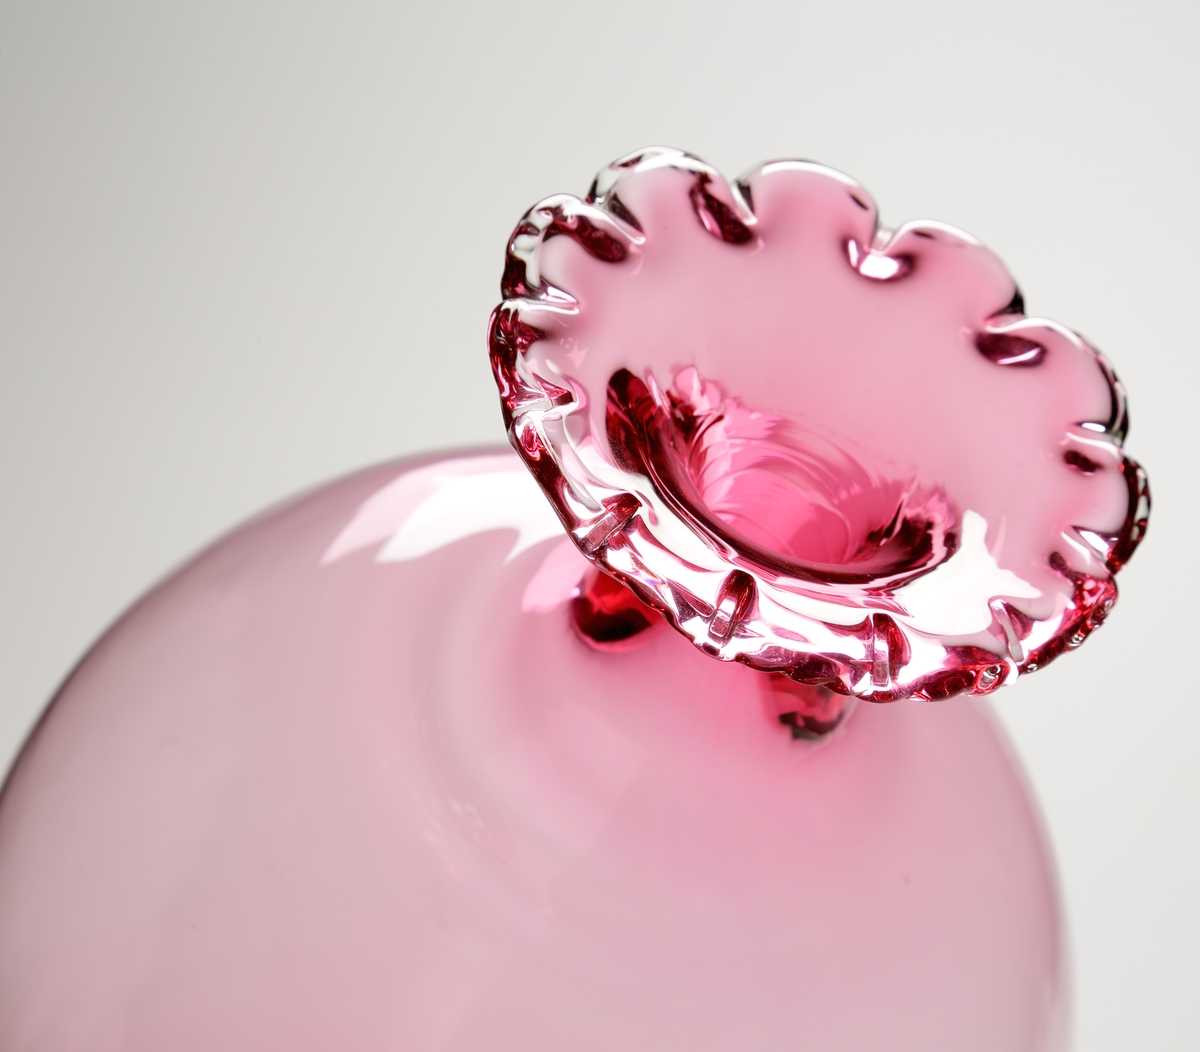 Vas eller pokal.
Stilen på glaset är gjord så att den ska se ålderdomlig ut.
Hög rosa vas/pokal som vidgar sig uppåt, och avslutas i en smal hals med utvikt mynning. Mynningen är veckad.
Benet är ofärgat och balusterformat.  
Foten rosa.